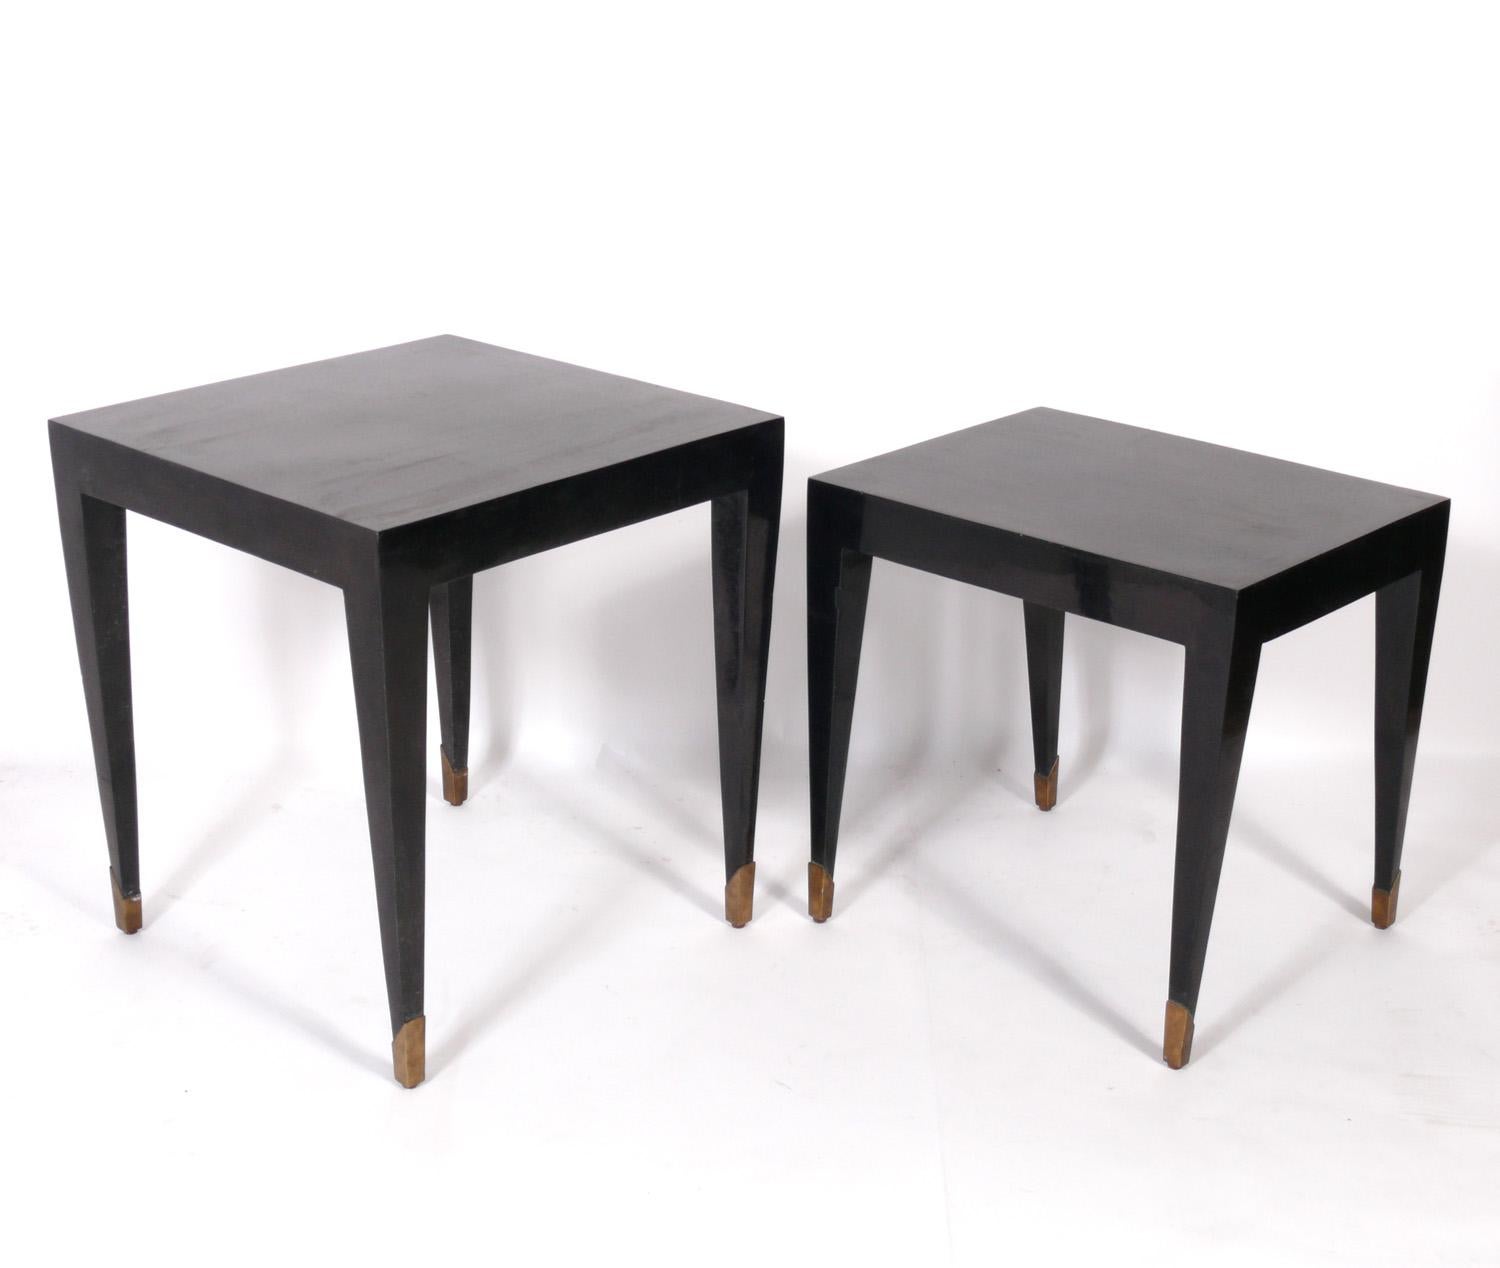 Sélection de tables en pierre tessellée, conçues par Christiane Lemieux pour Dwell Studios et Precedent. Leur prix est de 950 $ chacun. Veuillez noter qu'il s'agit de deux tailles différentes. La grande table mesure 26,25